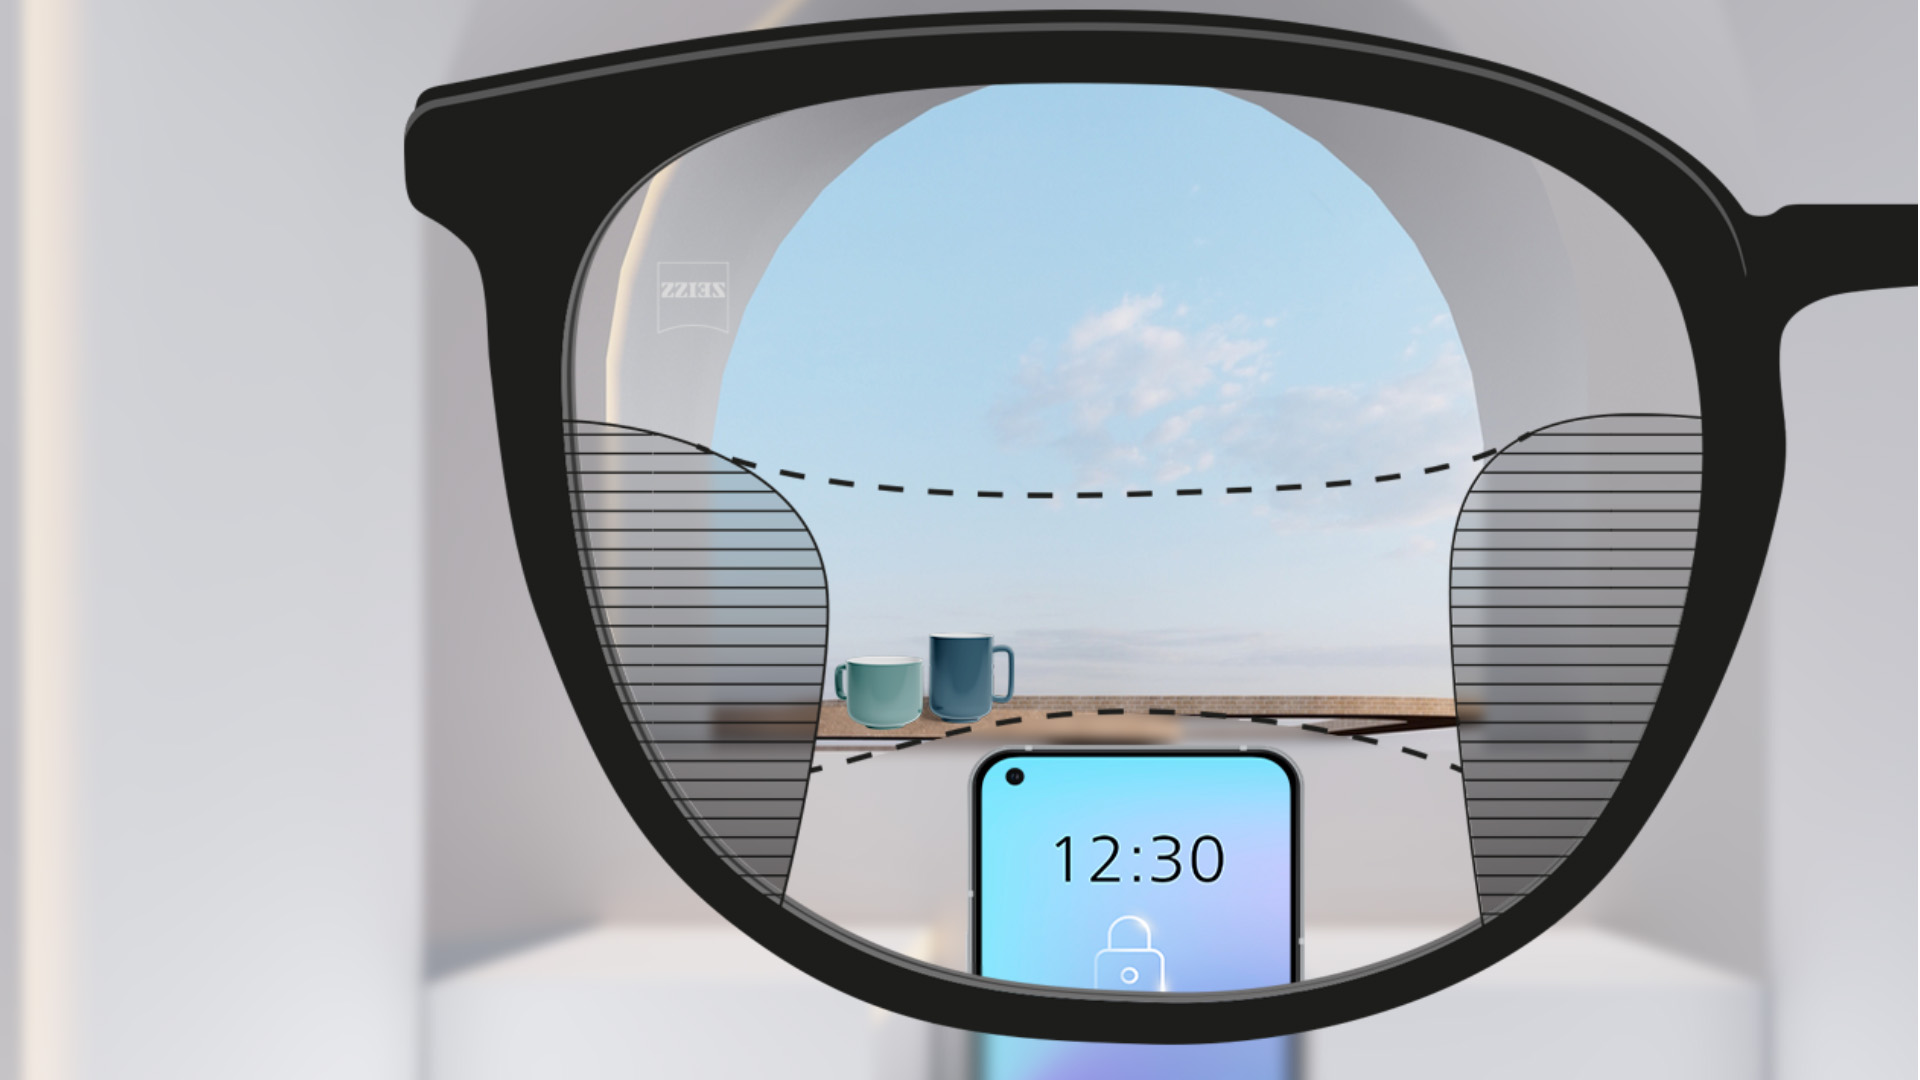 ZEISS SmartLife遠近両用レンズで見たスマートフォンと背景のカップ。左右にぼやけた部分が少しあるが、全体的にクリアに見える。